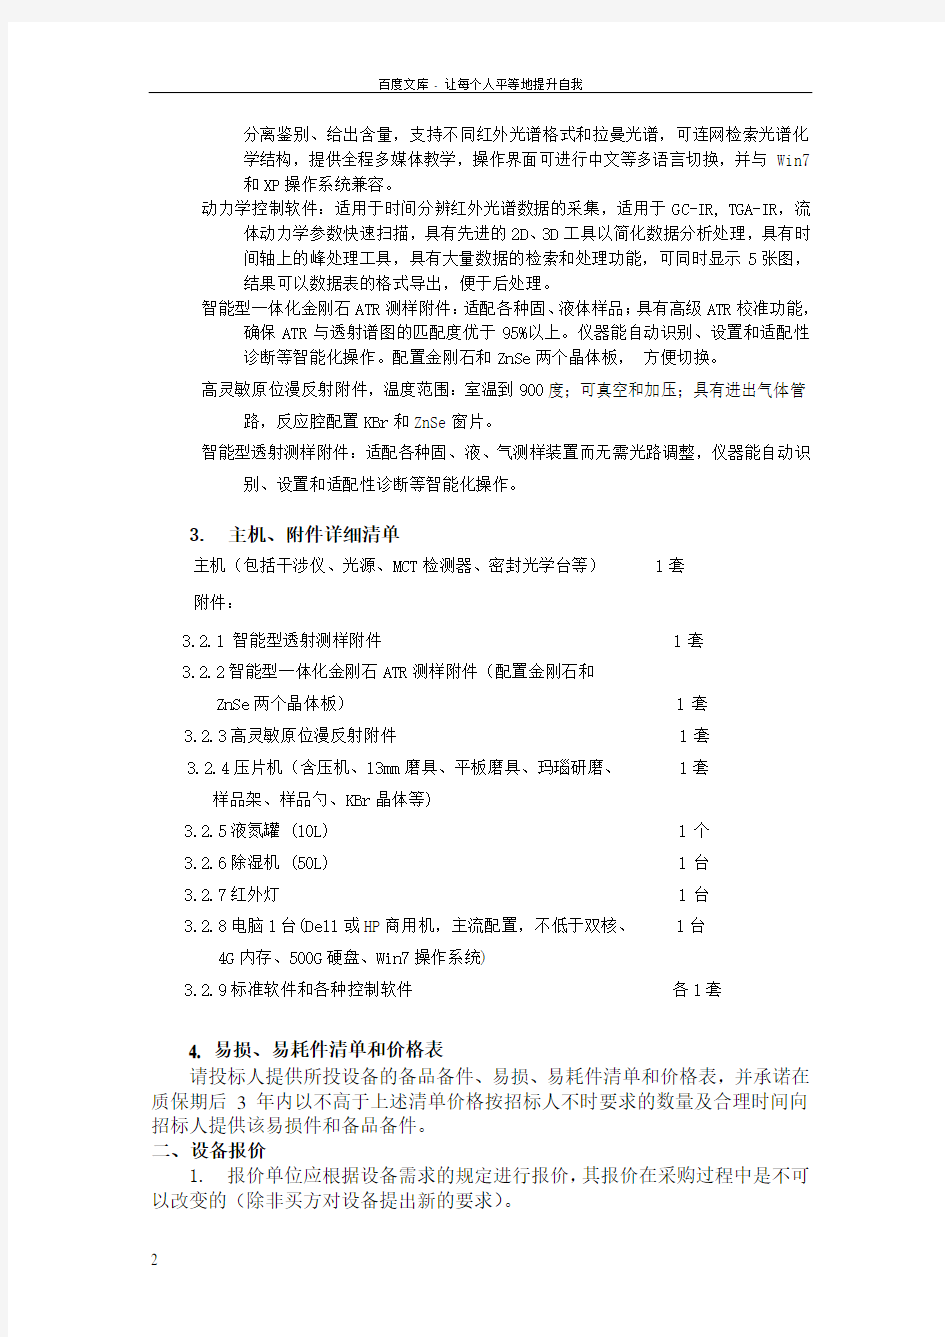 上海大学公开邀请招标购置傅立叶变换红外光谱仪的公告